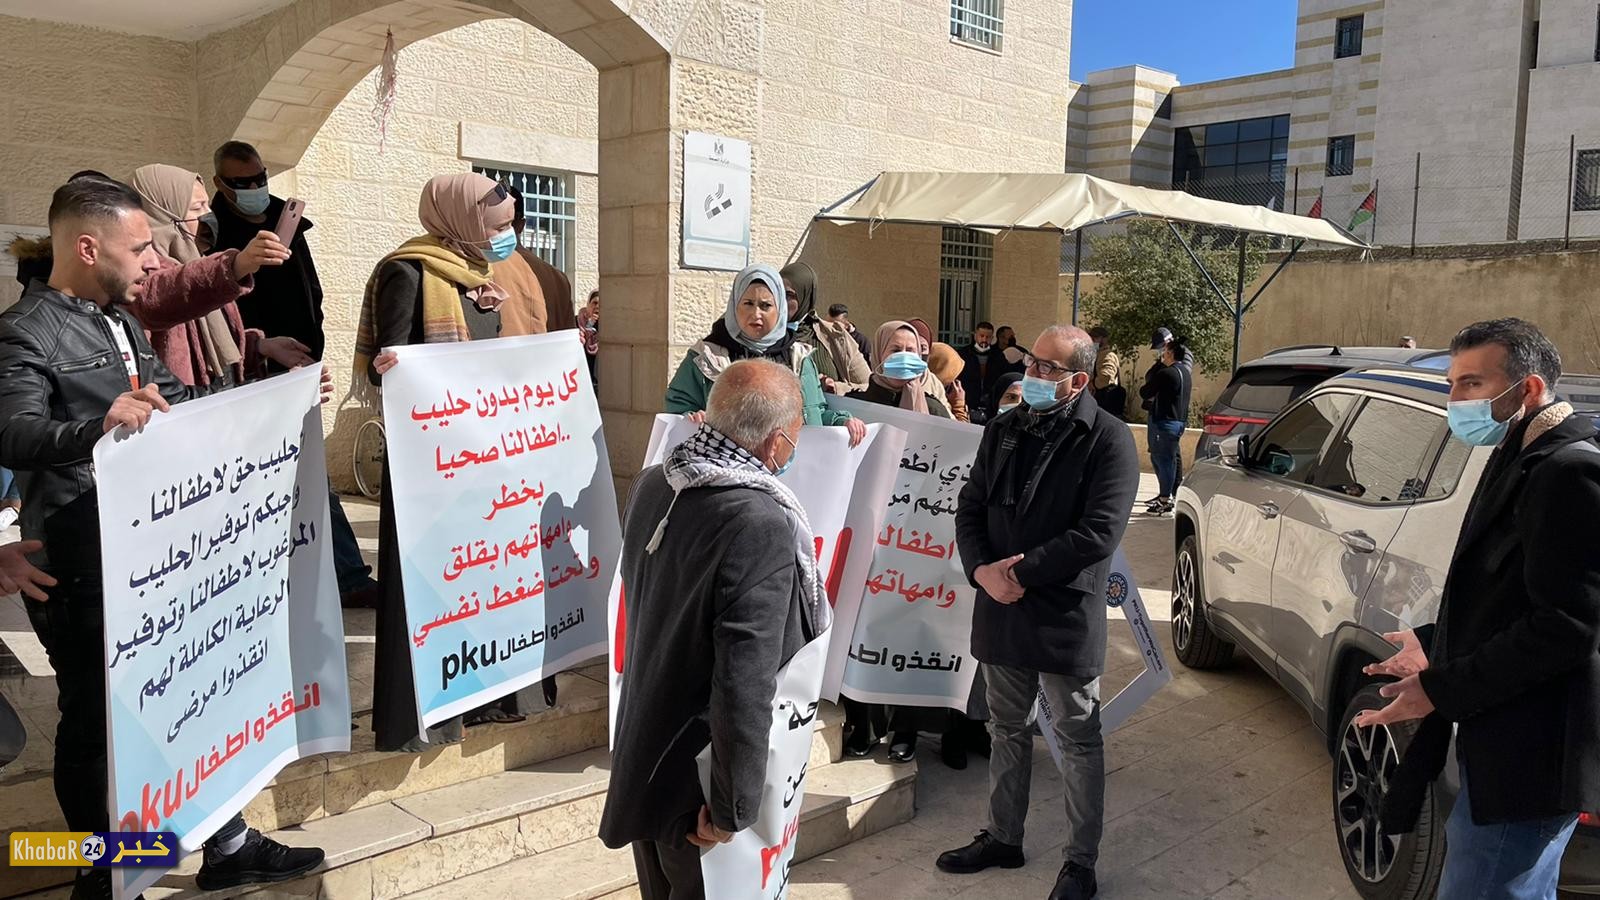 وقفة احتجاجية أمام مدرية الصحة في بيت لحم للمطالبة بتوفير أودية وحليب لمرضى "pku"